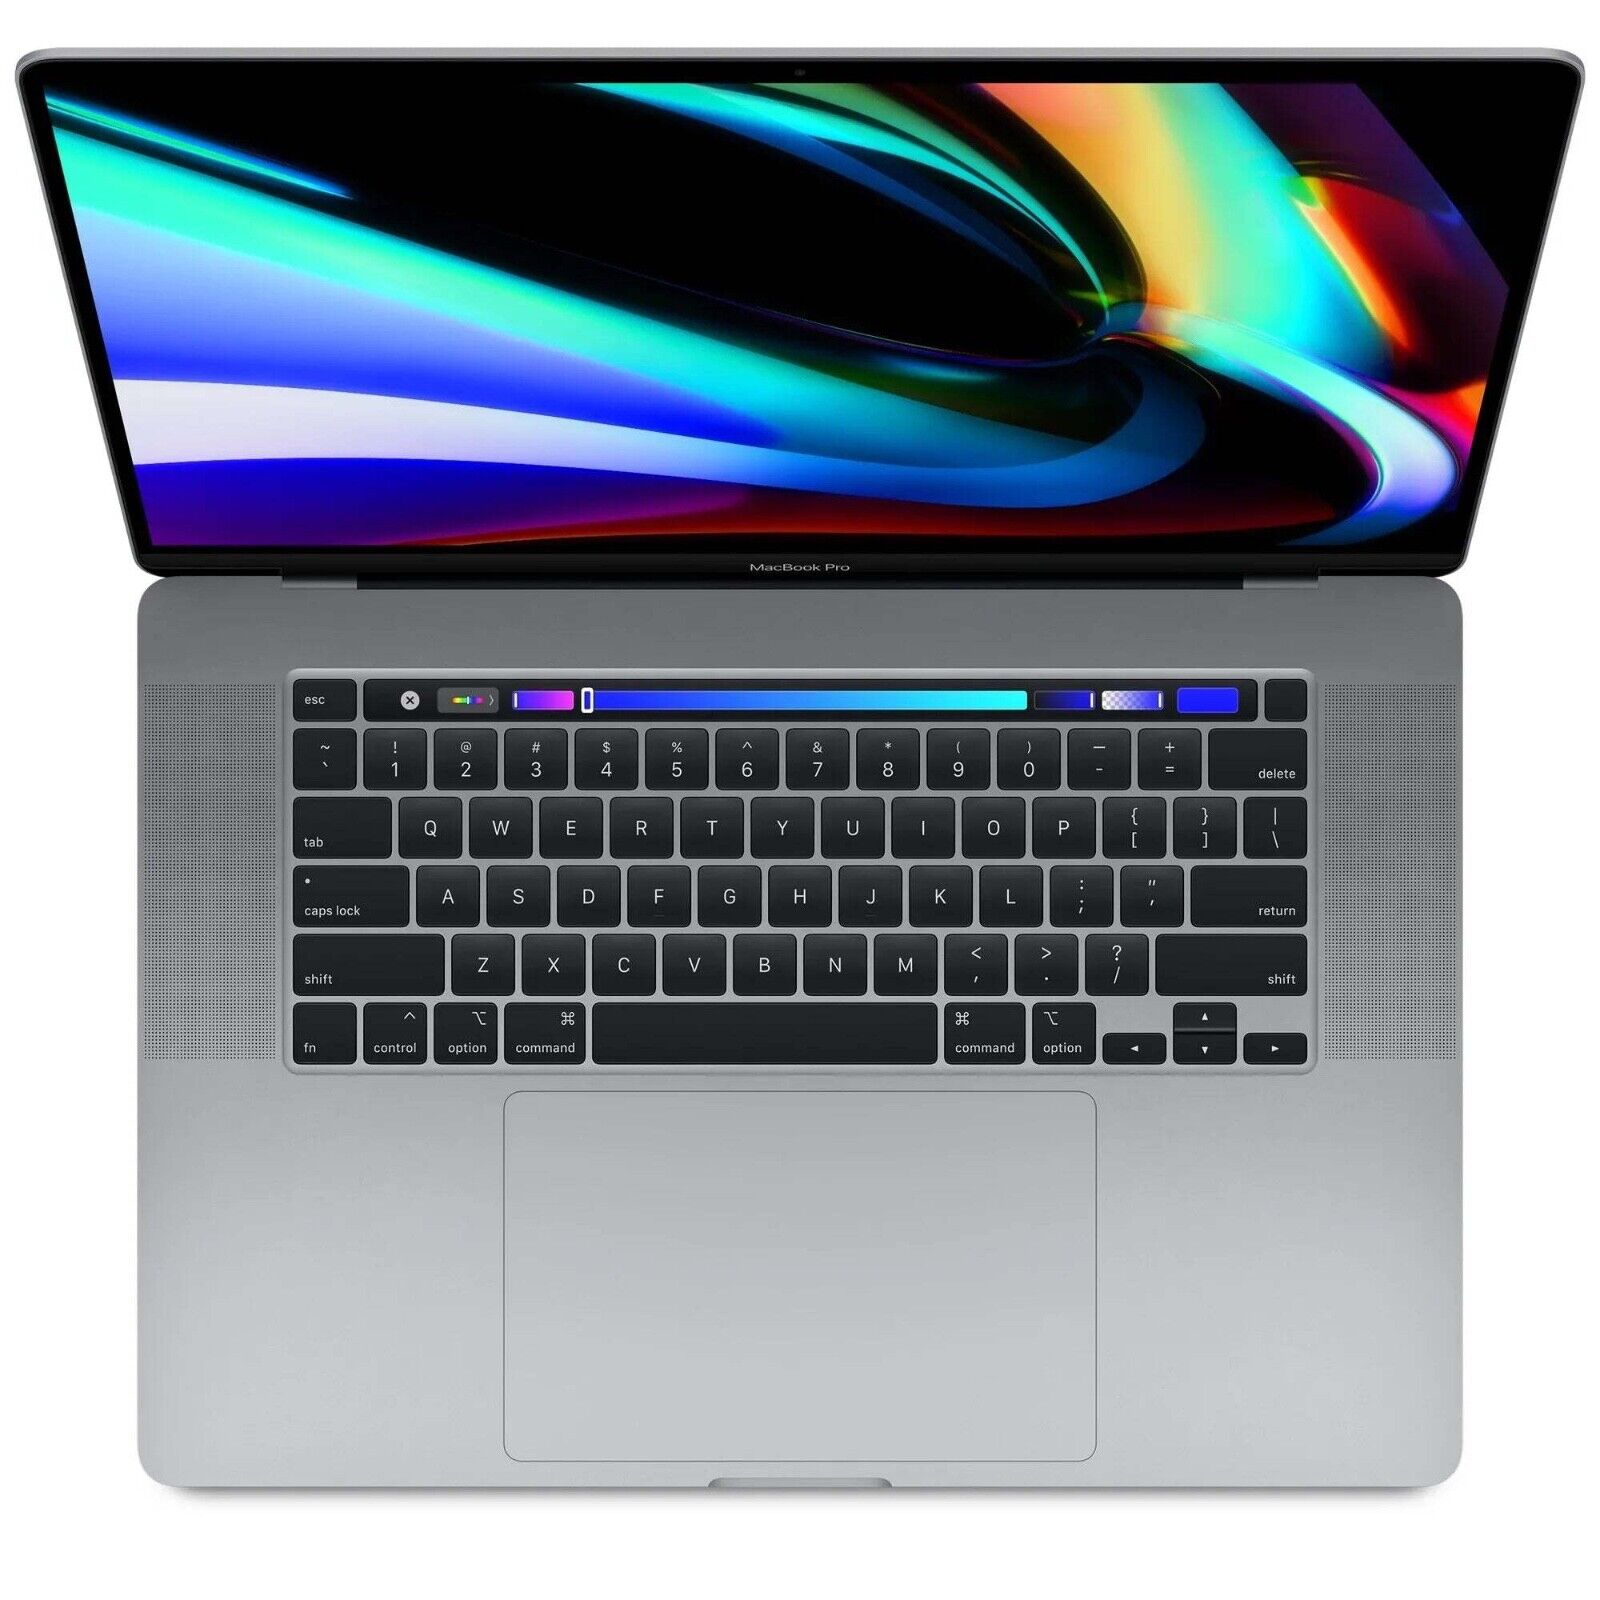 2019 MacBook Pro 16 inch i7 2.6GHz 16GB 512GB 4GB GPU A2141 EMC 3347 MVVJ2LL/A